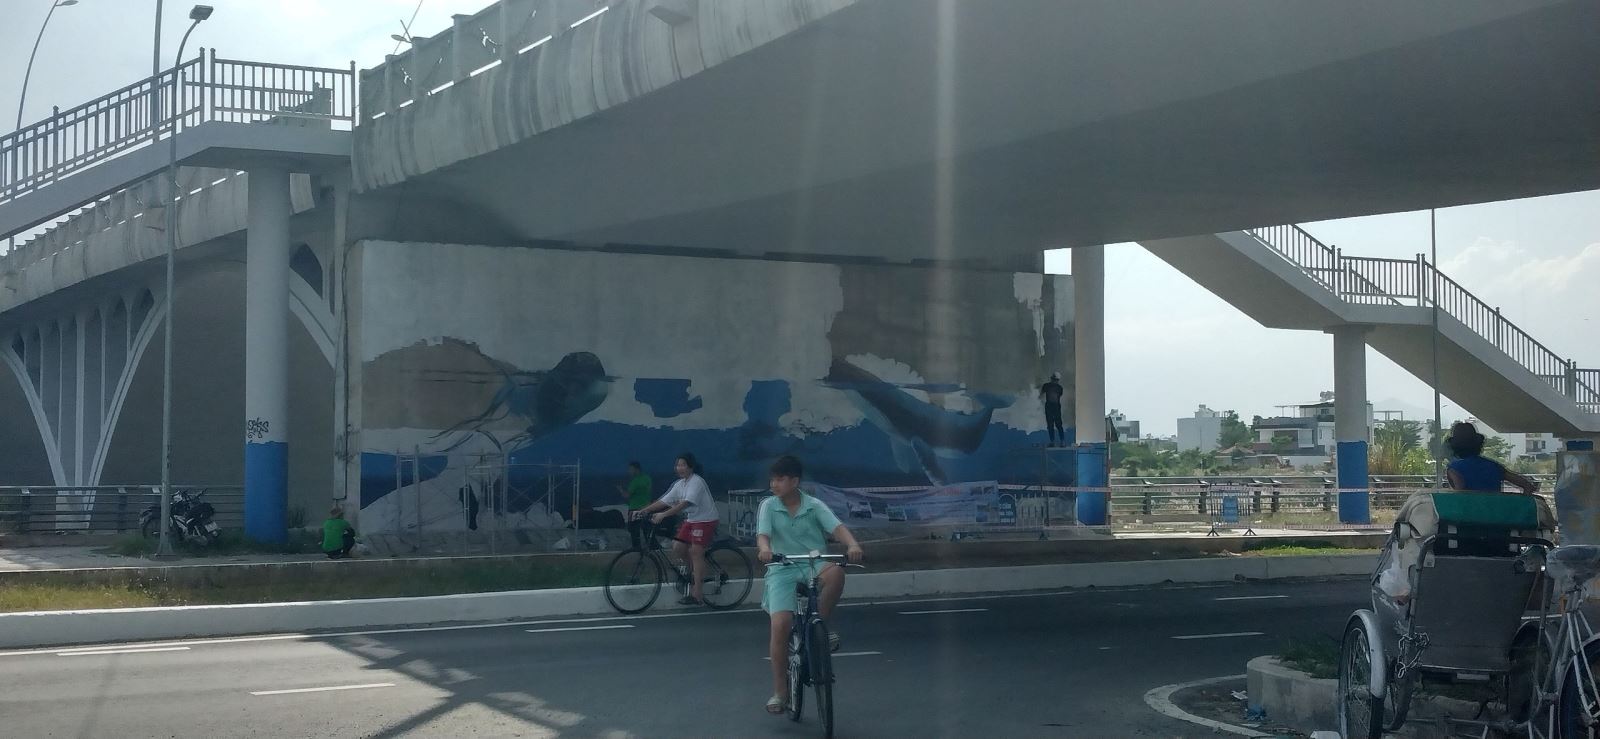 Bố Già vẽ tranh tường khu phố miễn phí Nha Trang